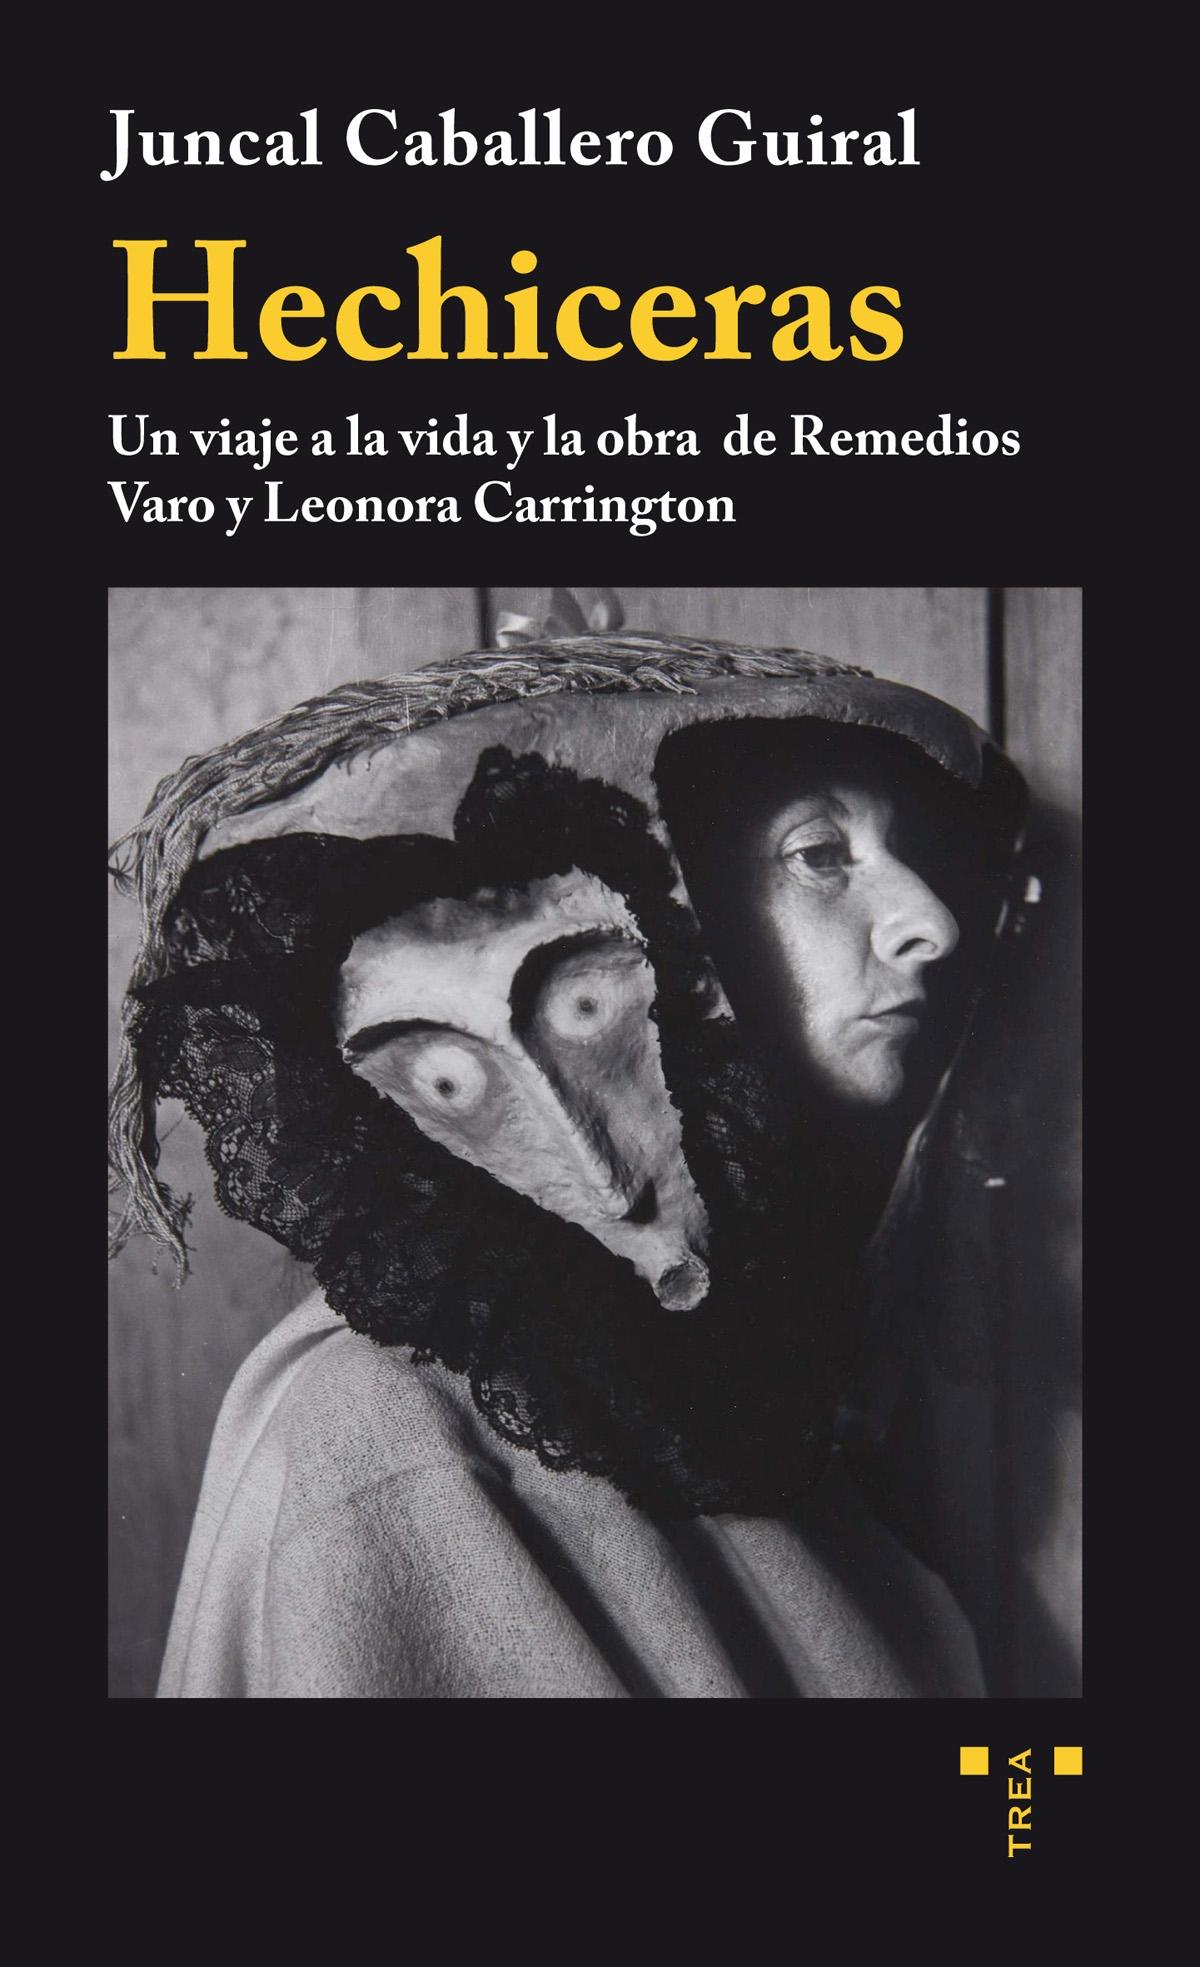 Hechiceras "Un viaje a la vida y la obra de Remedios Varo y Leonora Carrington". 